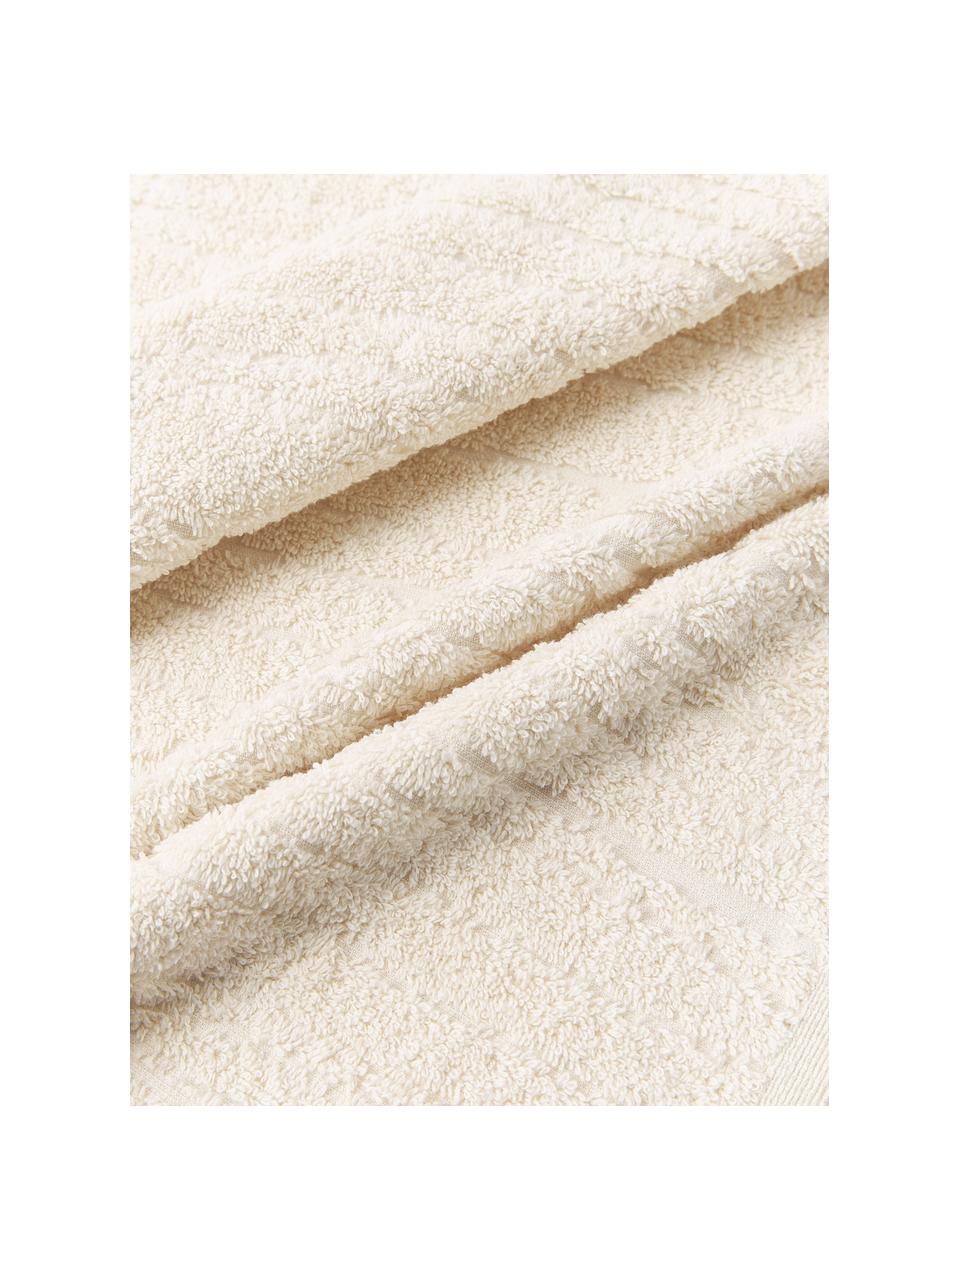 Komplet ręczników z bawełny Audrina, 3 elem., Jasny beżowy, Komplet z różnymi rozmiarami